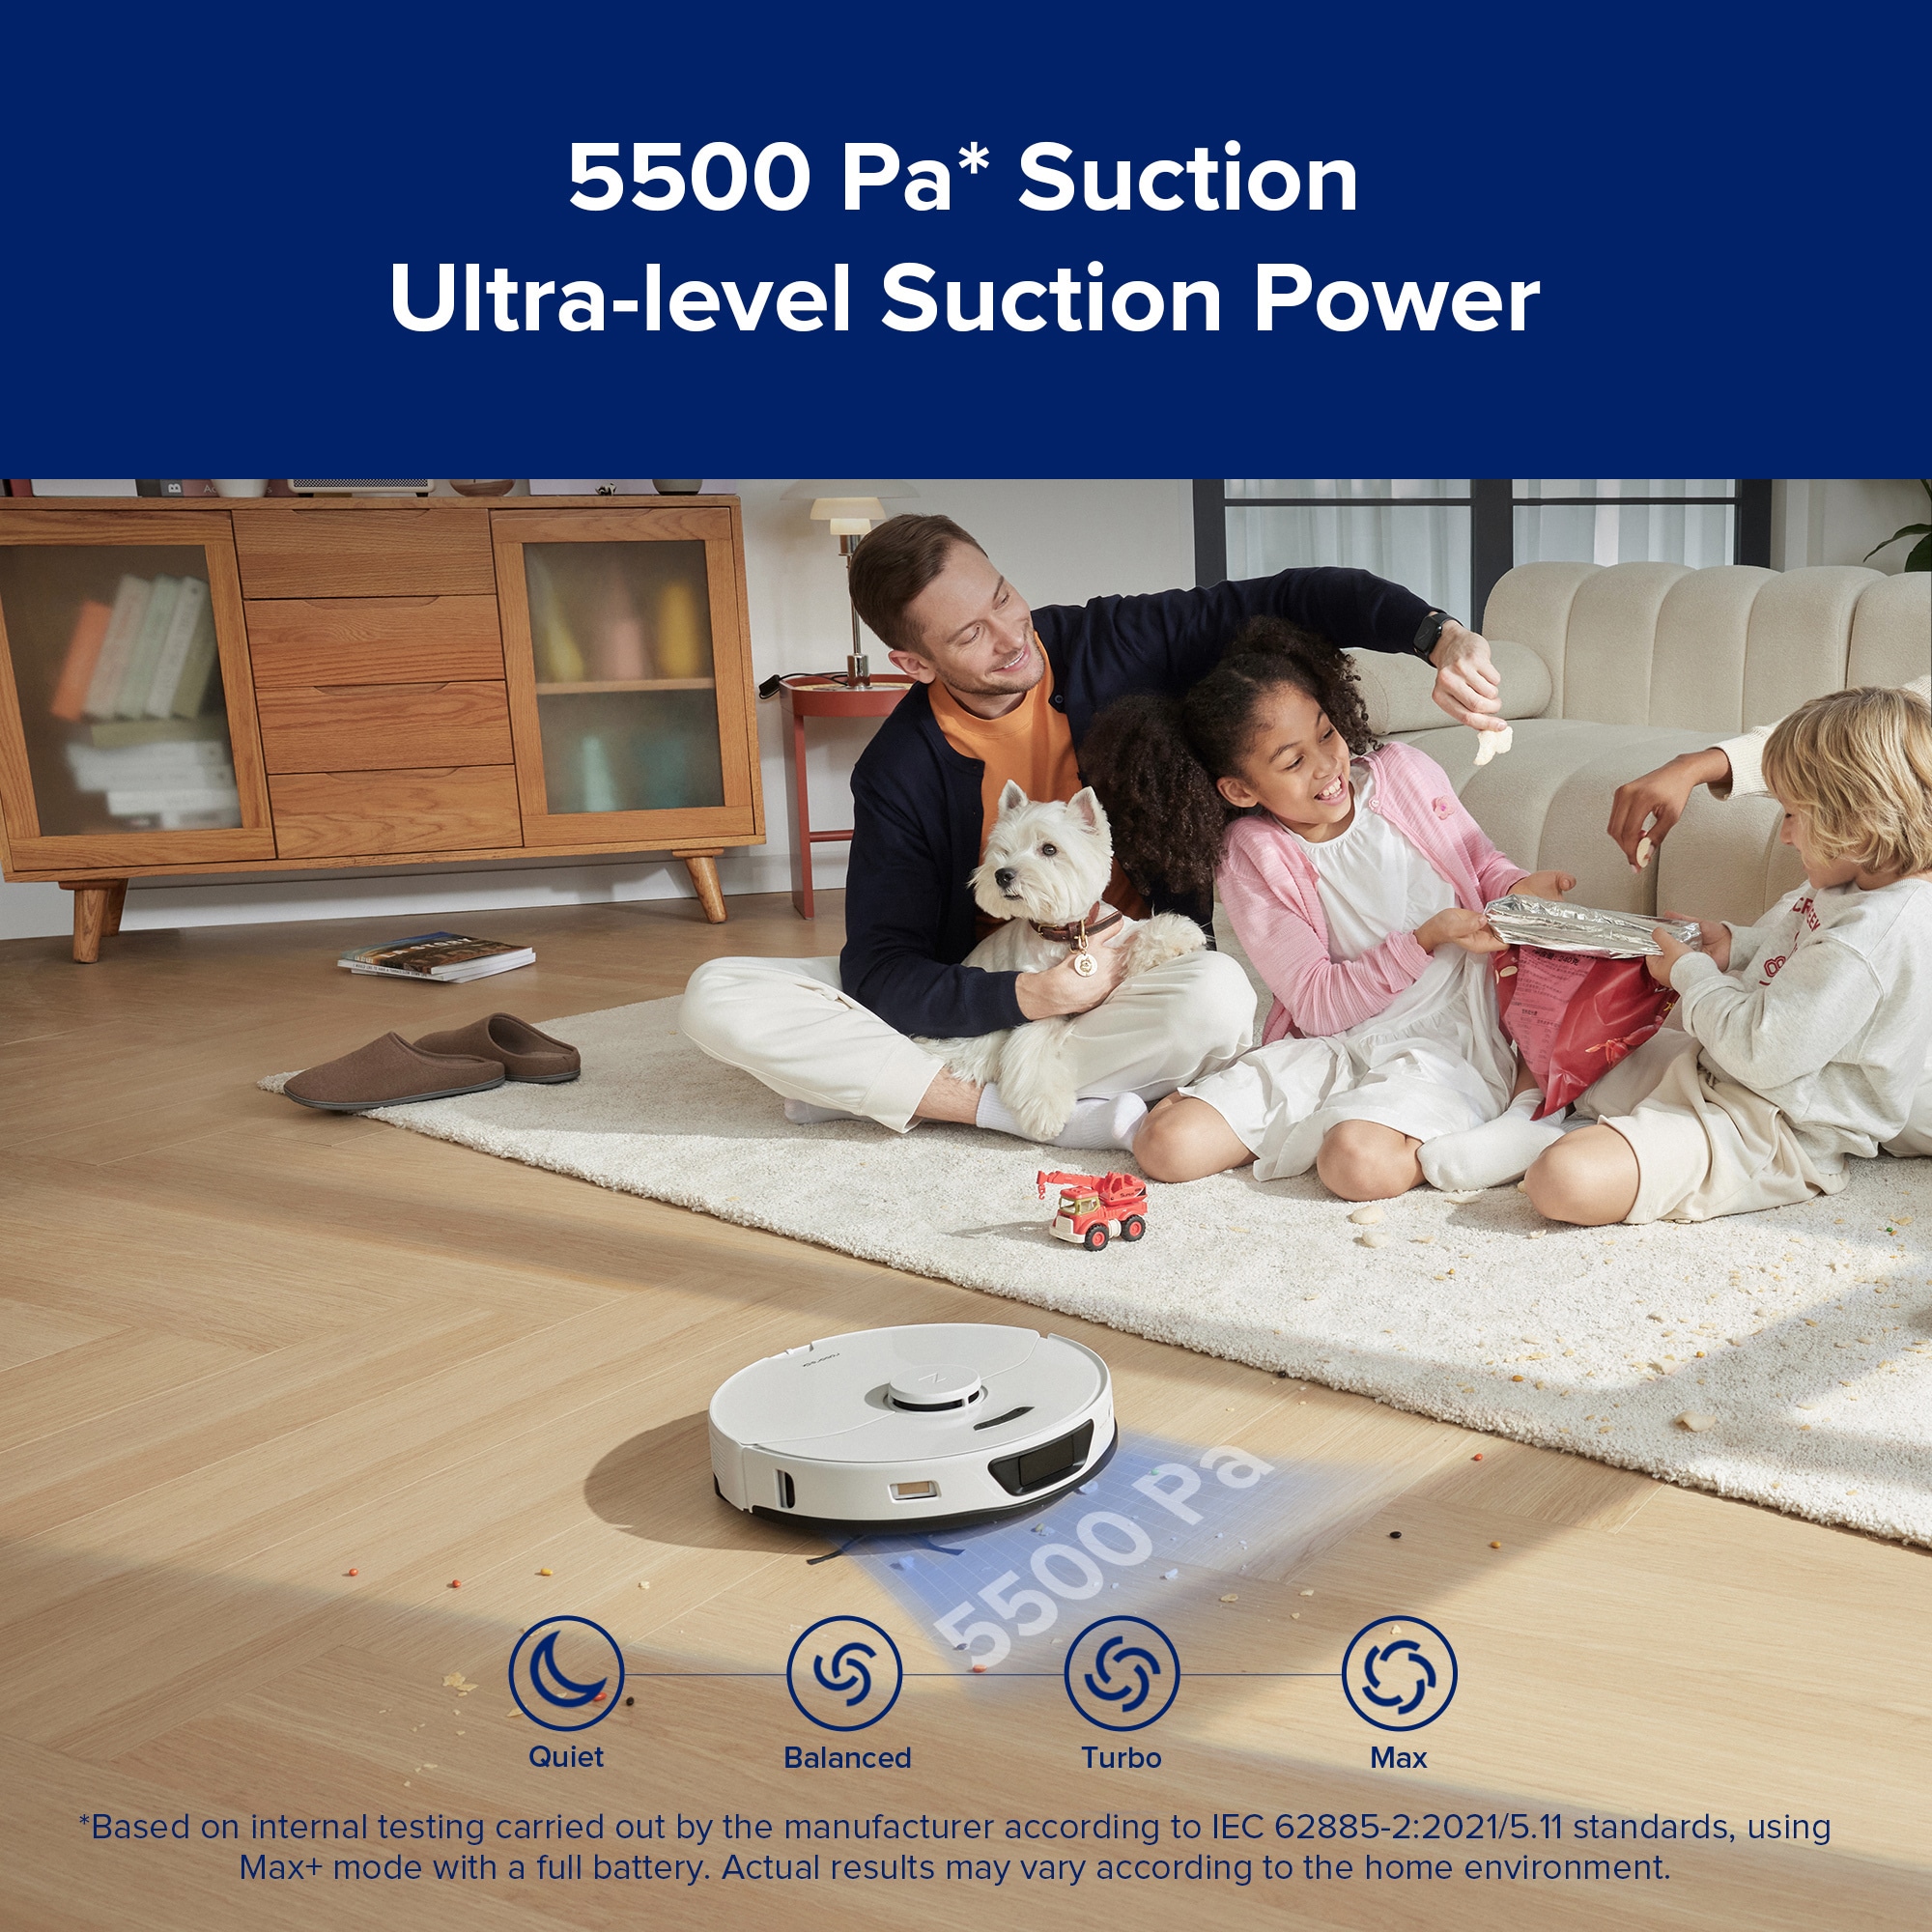 Hands on: Roborock S8 Pro Ultra smart home vacuum & mop - General